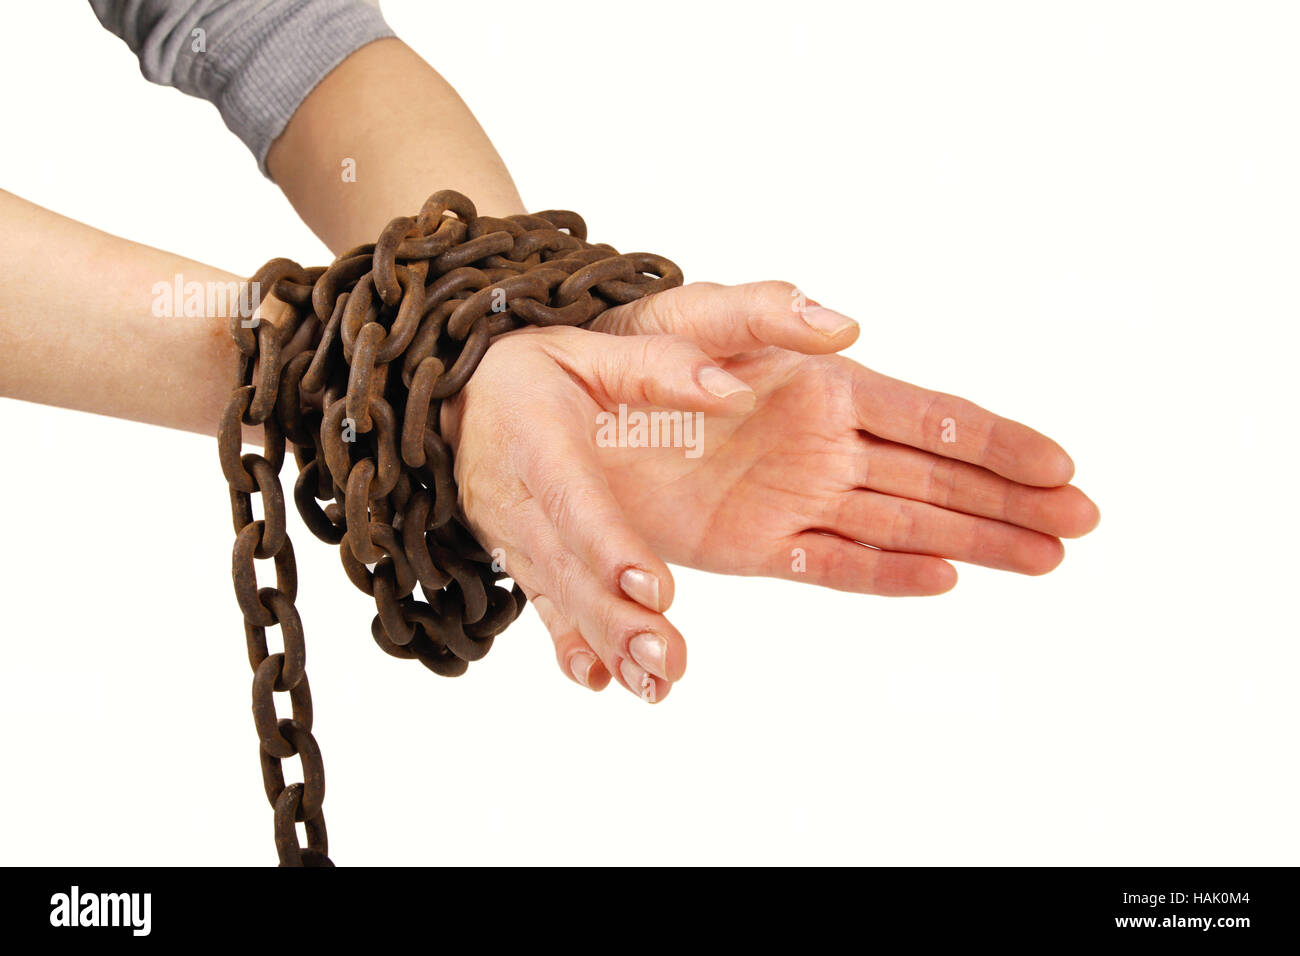 Les mains liées avec chaîne, isolated on white Banque D'Images